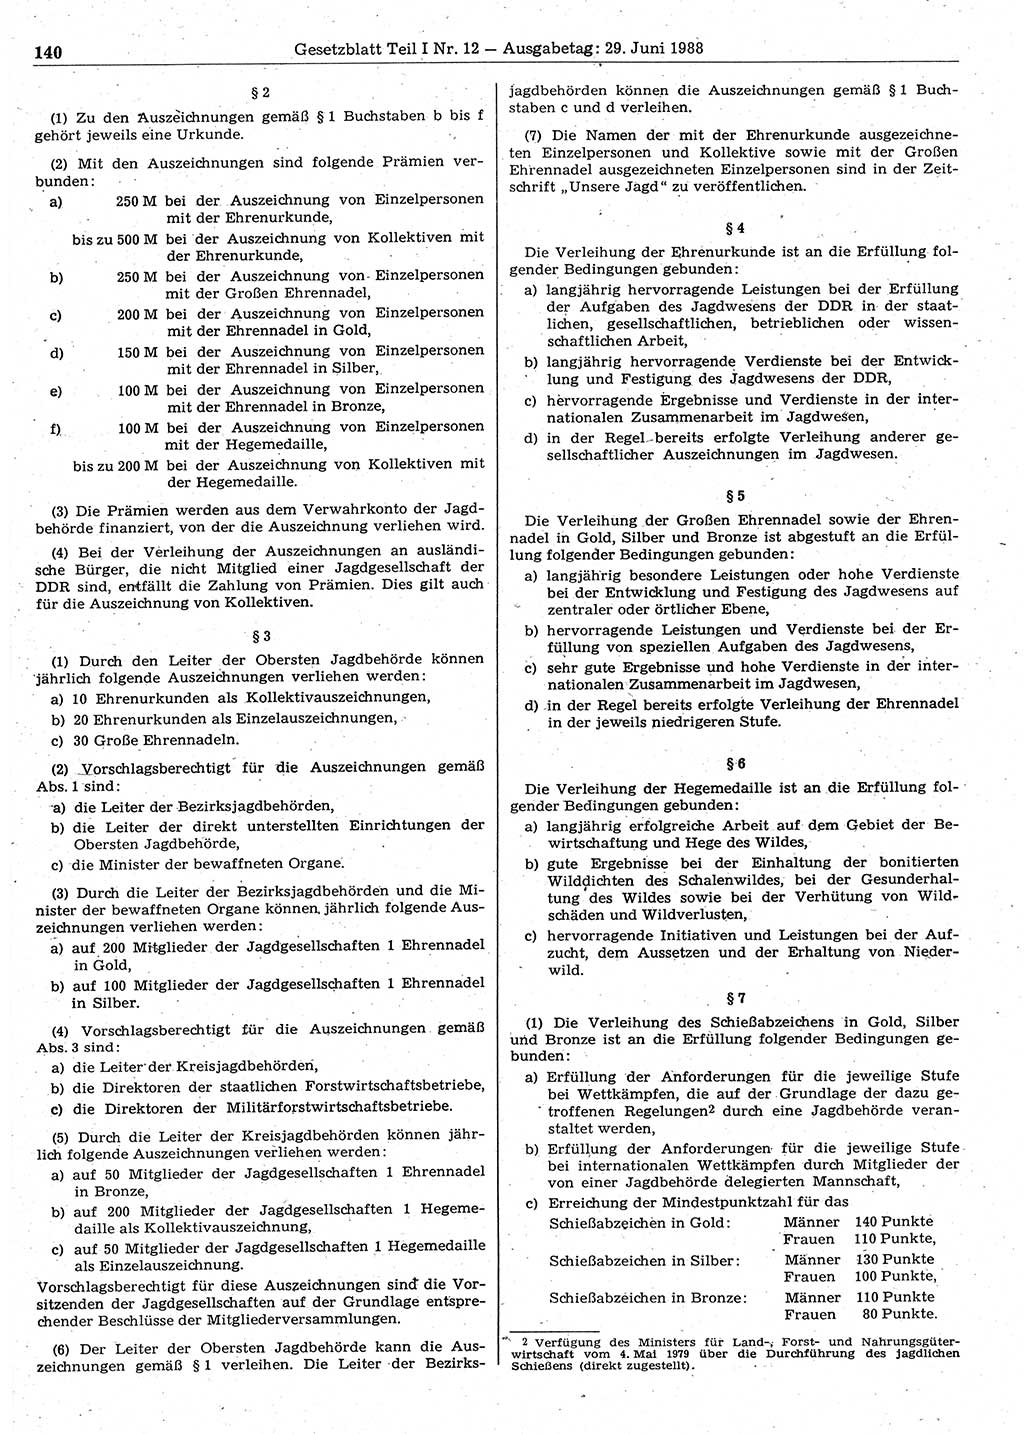 Gesetzblatt (GBl.) der Deutschen Demokratischen Republik (DDR) Teil Ⅰ 1988, Seite 140 (GBl. DDR Ⅰ 1988, S. 140)